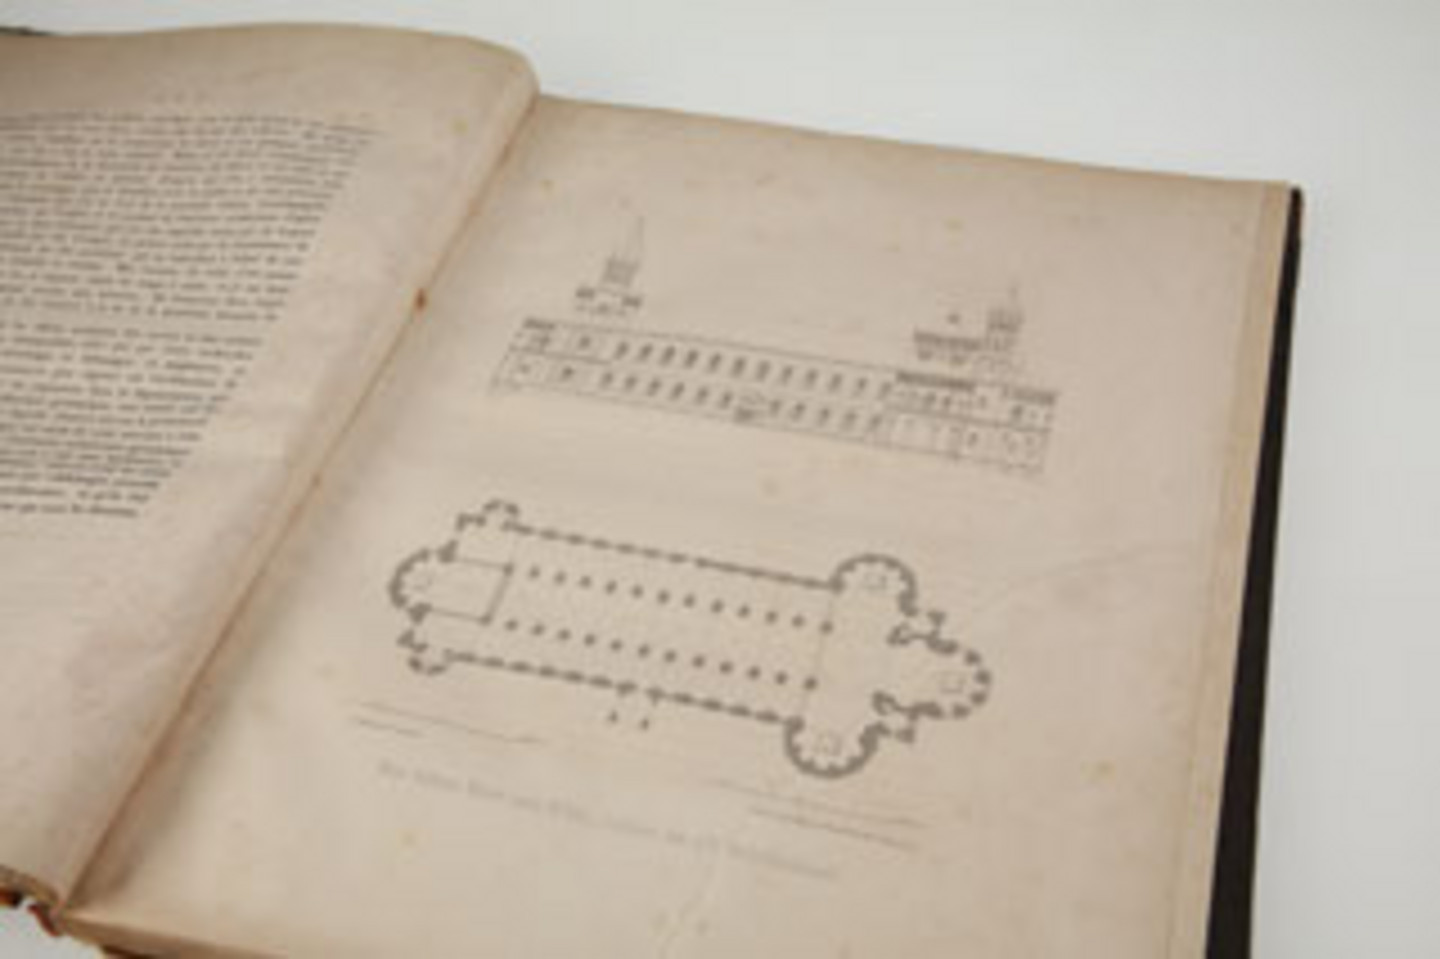 Foto eines historischen, beschädigten Buches aus dem Jahr 1843.